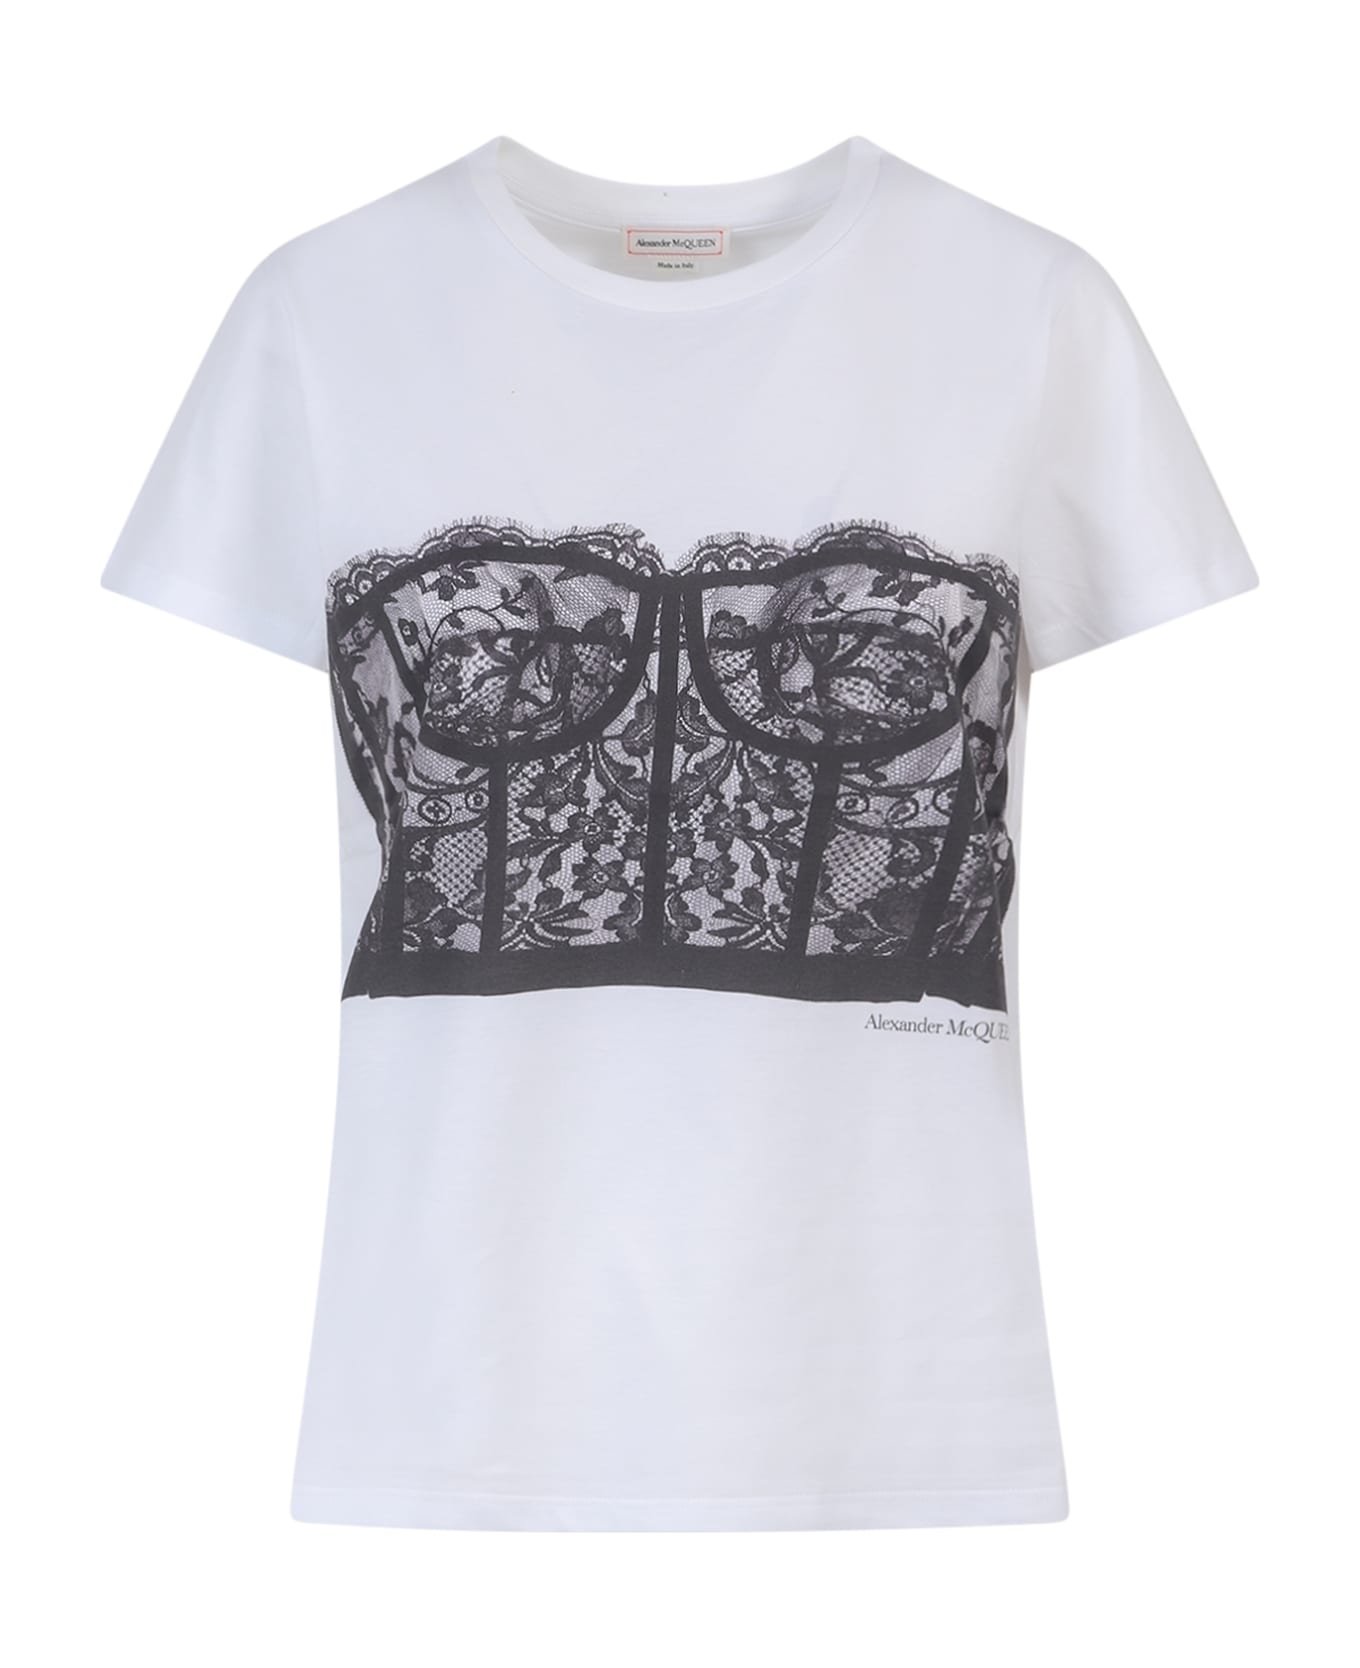 Alexander McQueen Corset T-shirt - White/Black